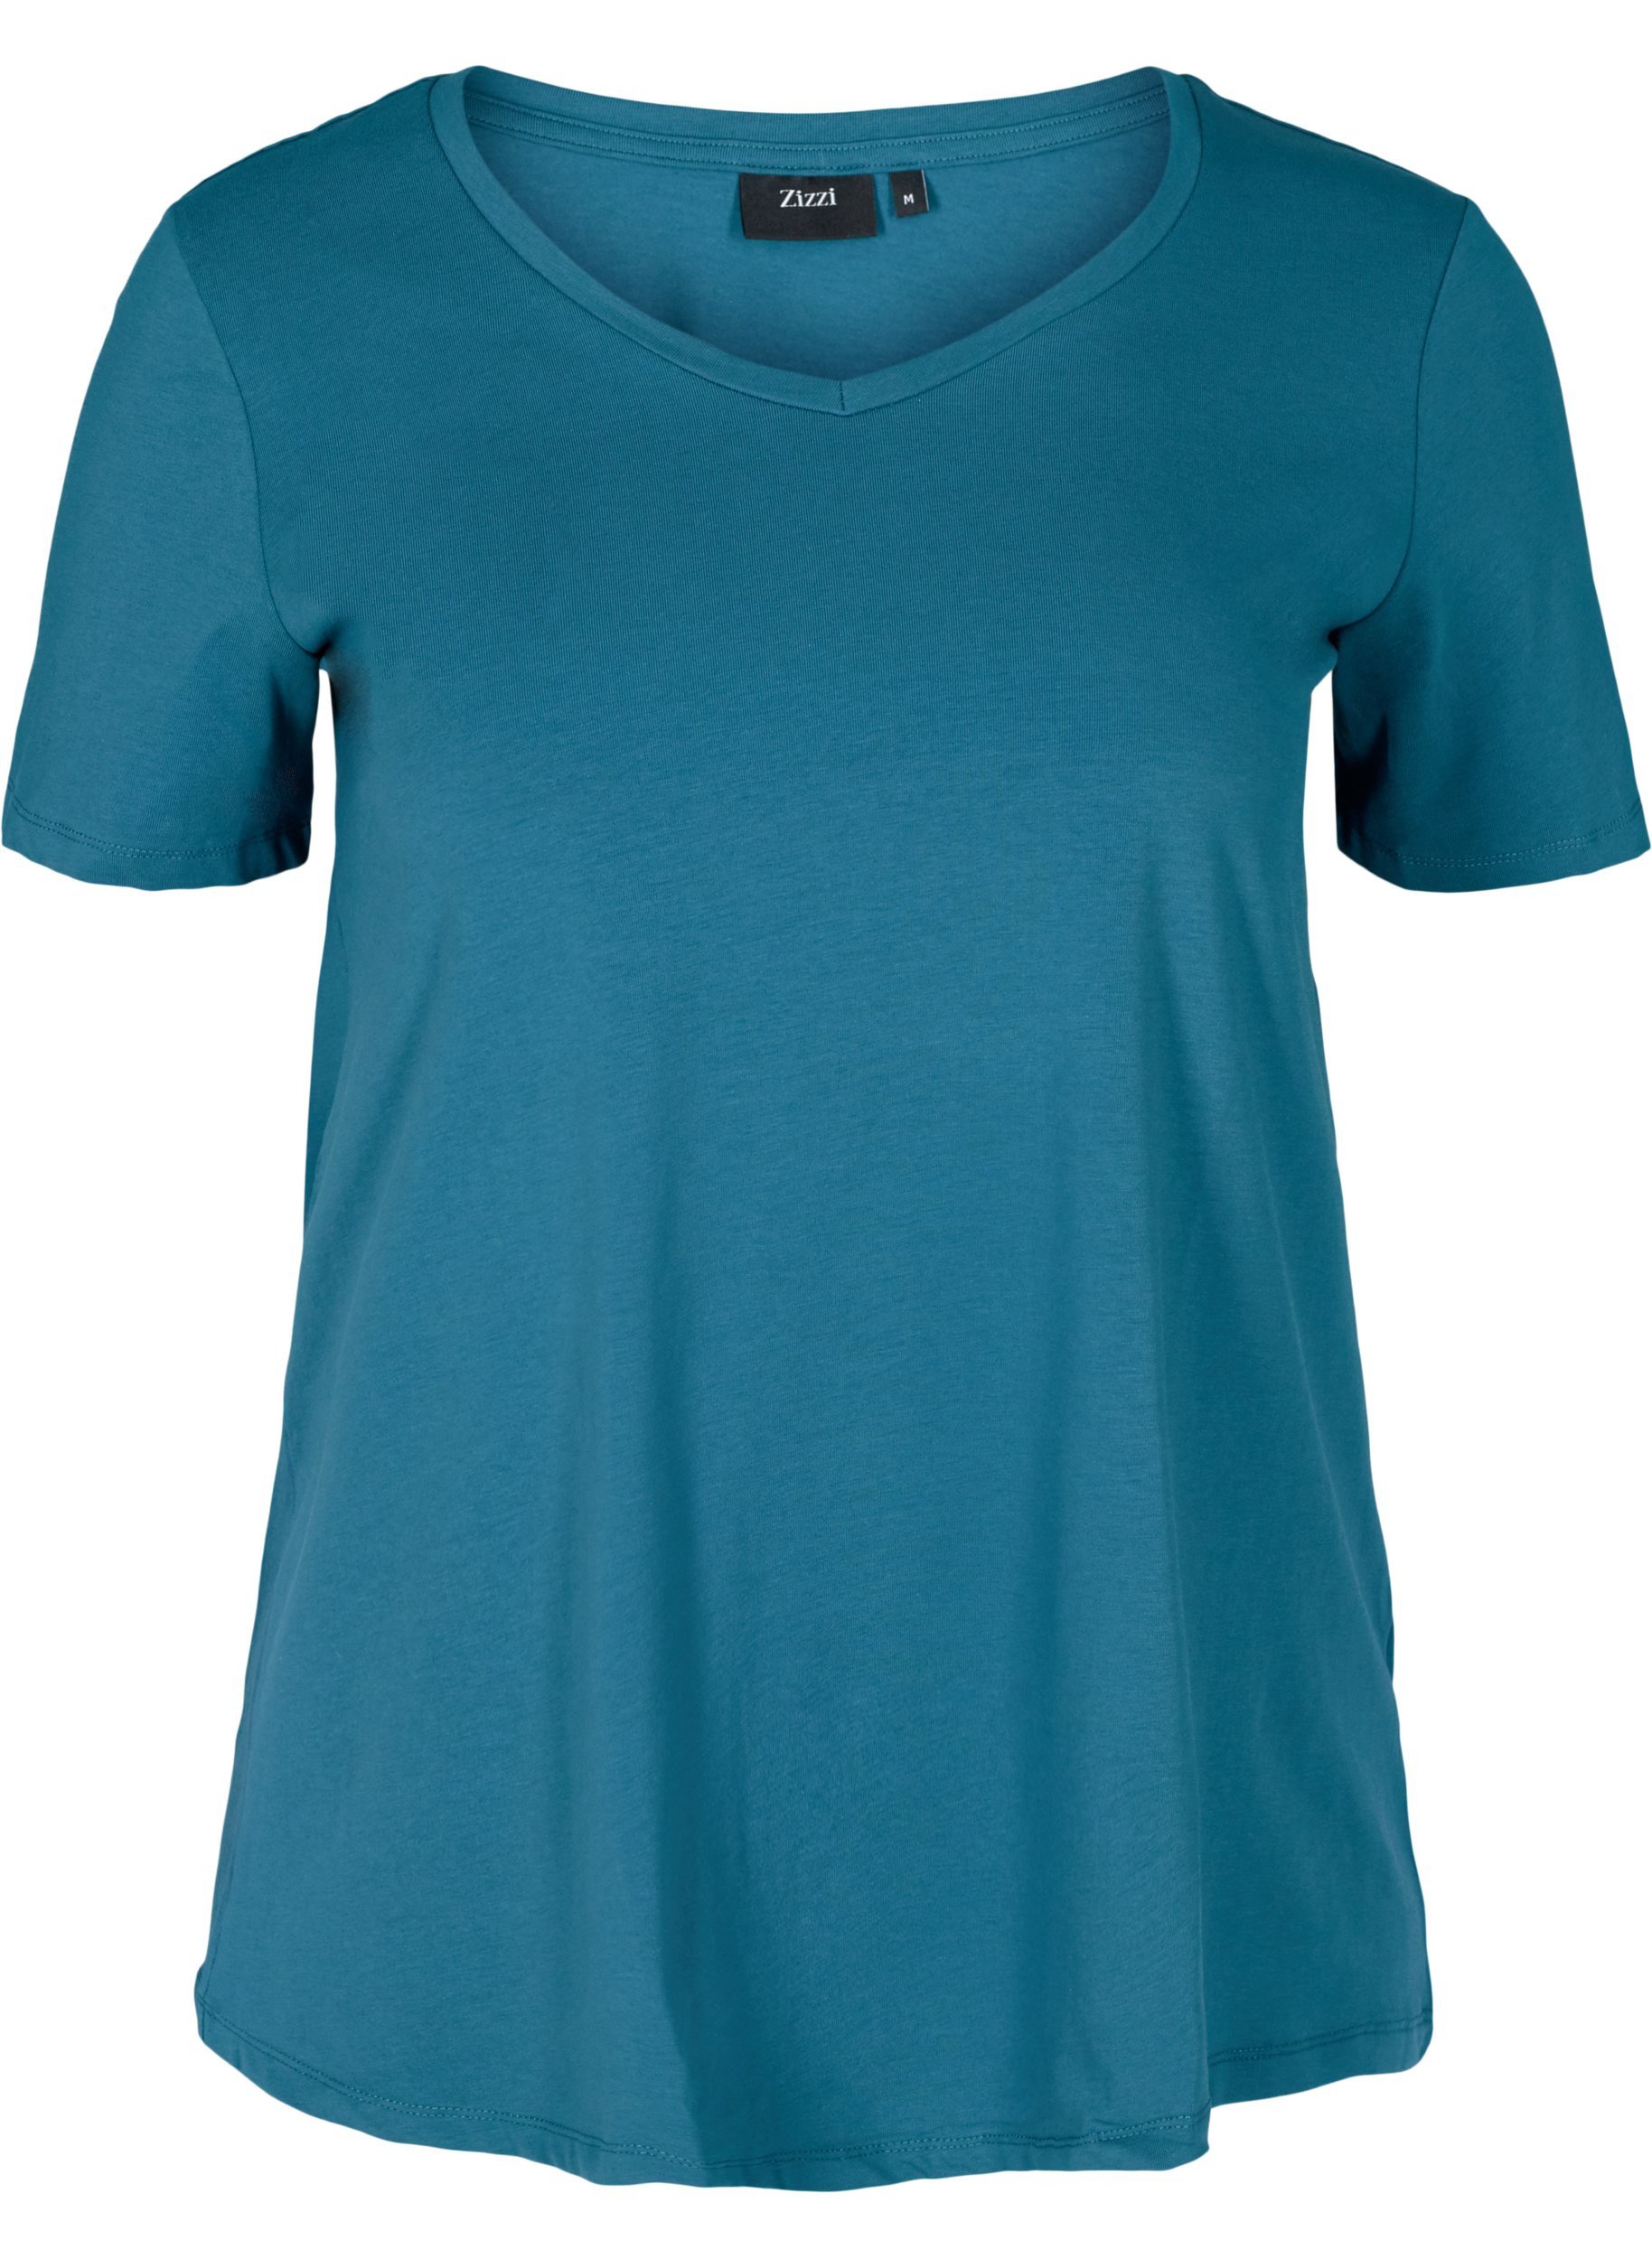 Basis t-shirt, Blue Coral